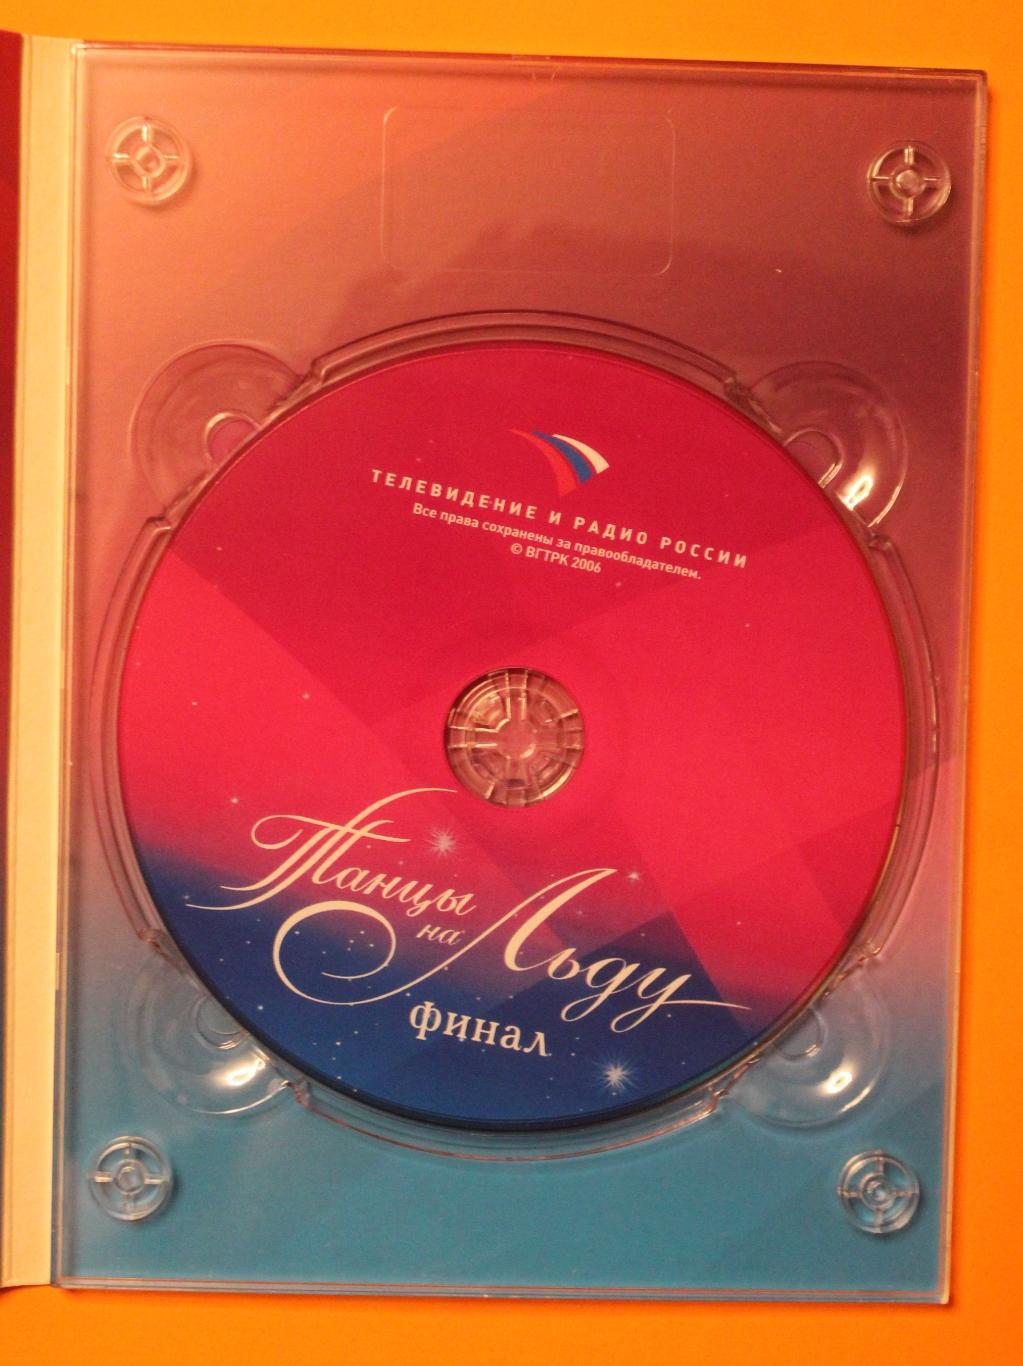 DVD Танцы на льду (фигурное катание, финал 2006) 2